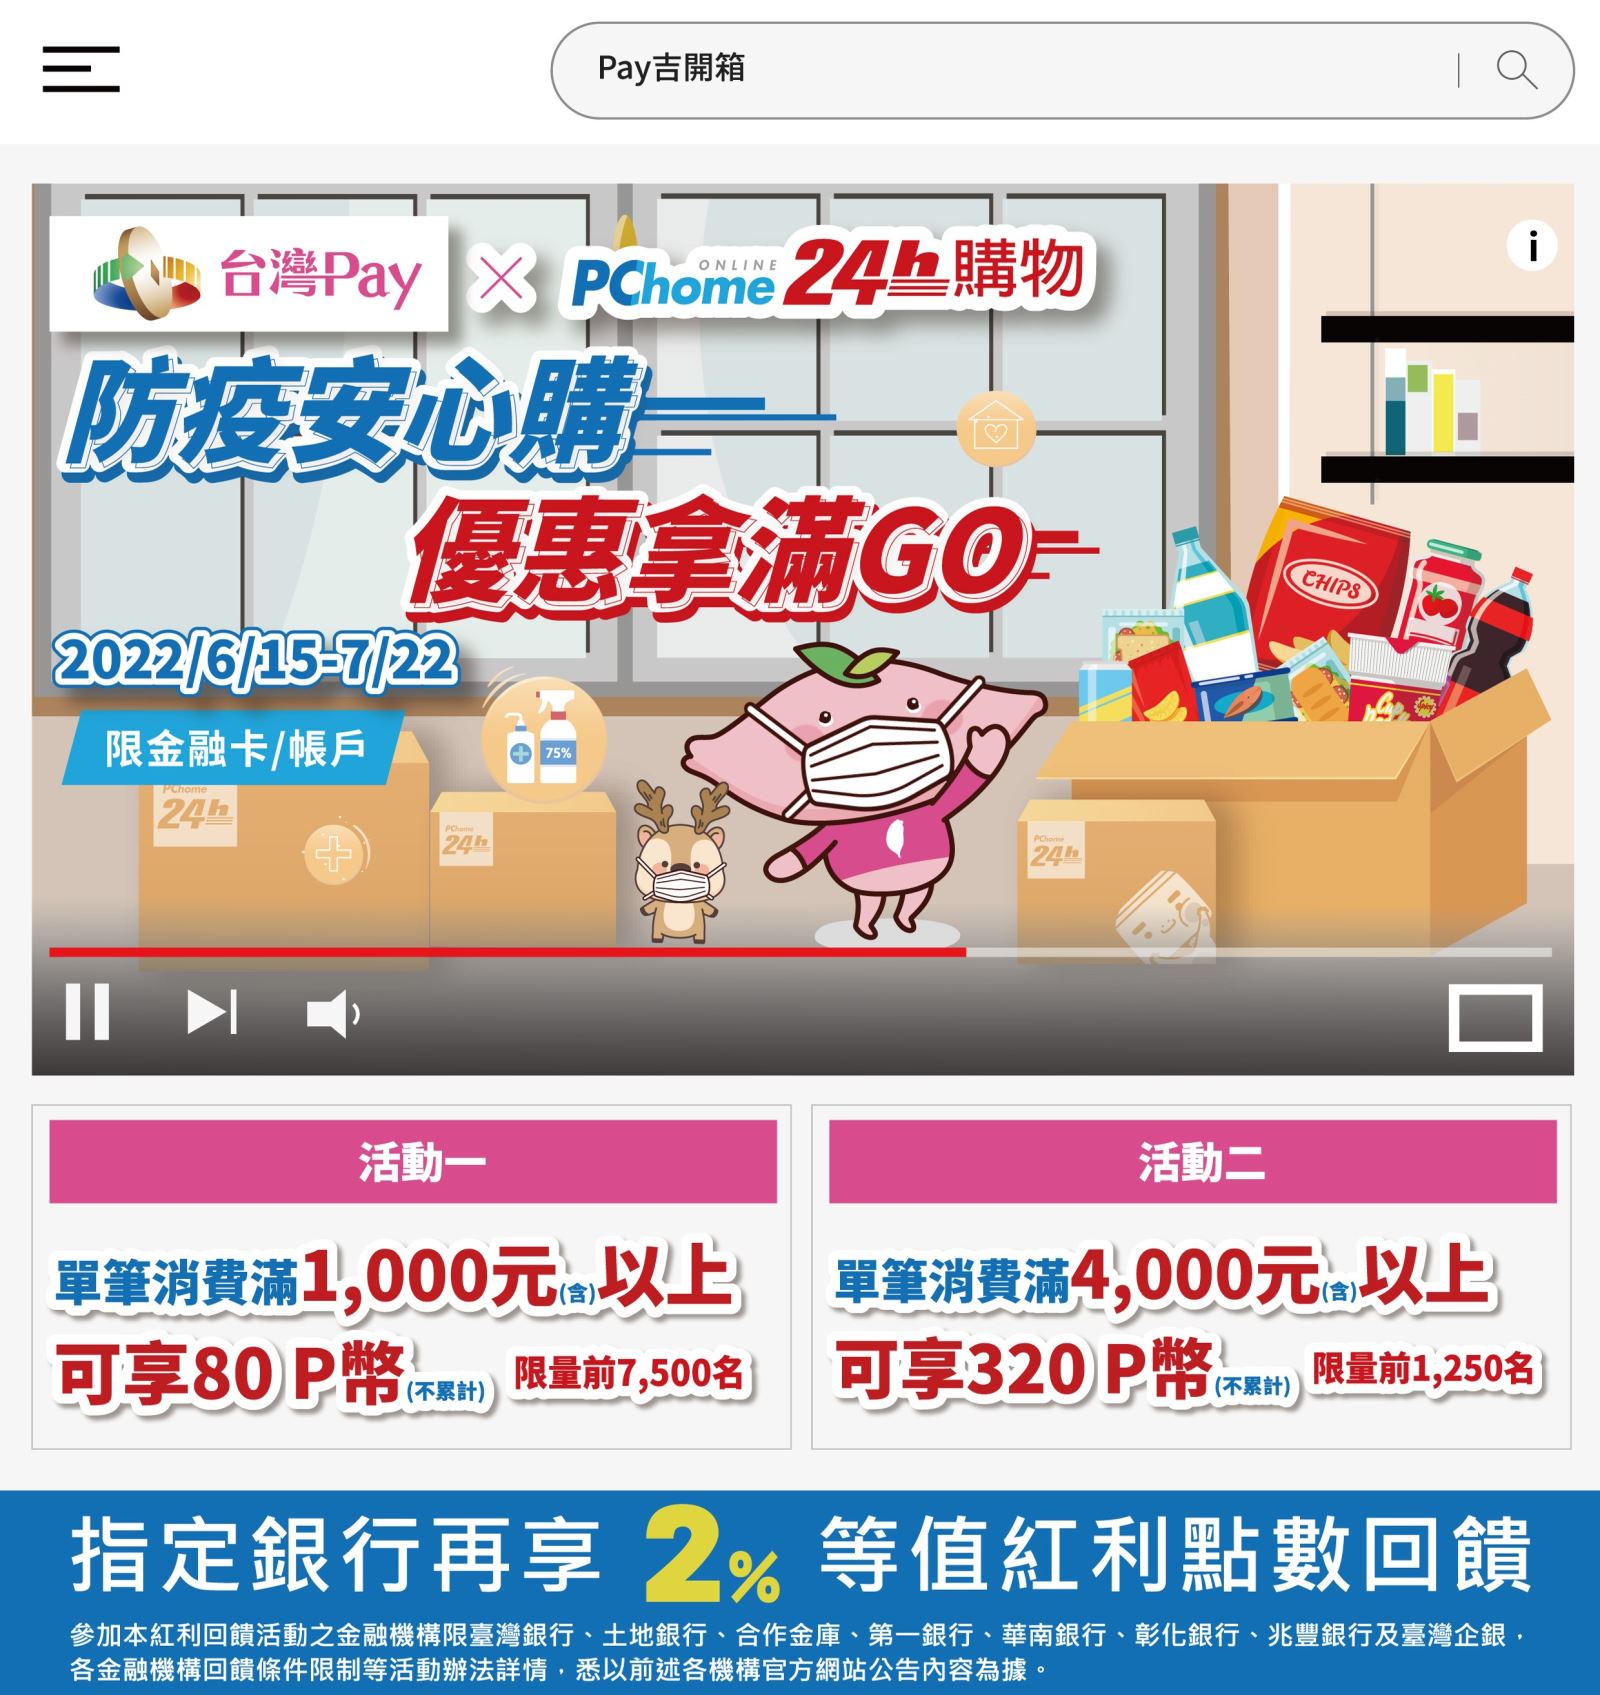 台灣Pay × PChome，防疫安心購，優惠拿滿GO。消費滿額最高享400P幣(此圖片為本優惠活動主要視覺，活動內容請參考活動辦法說明文字)